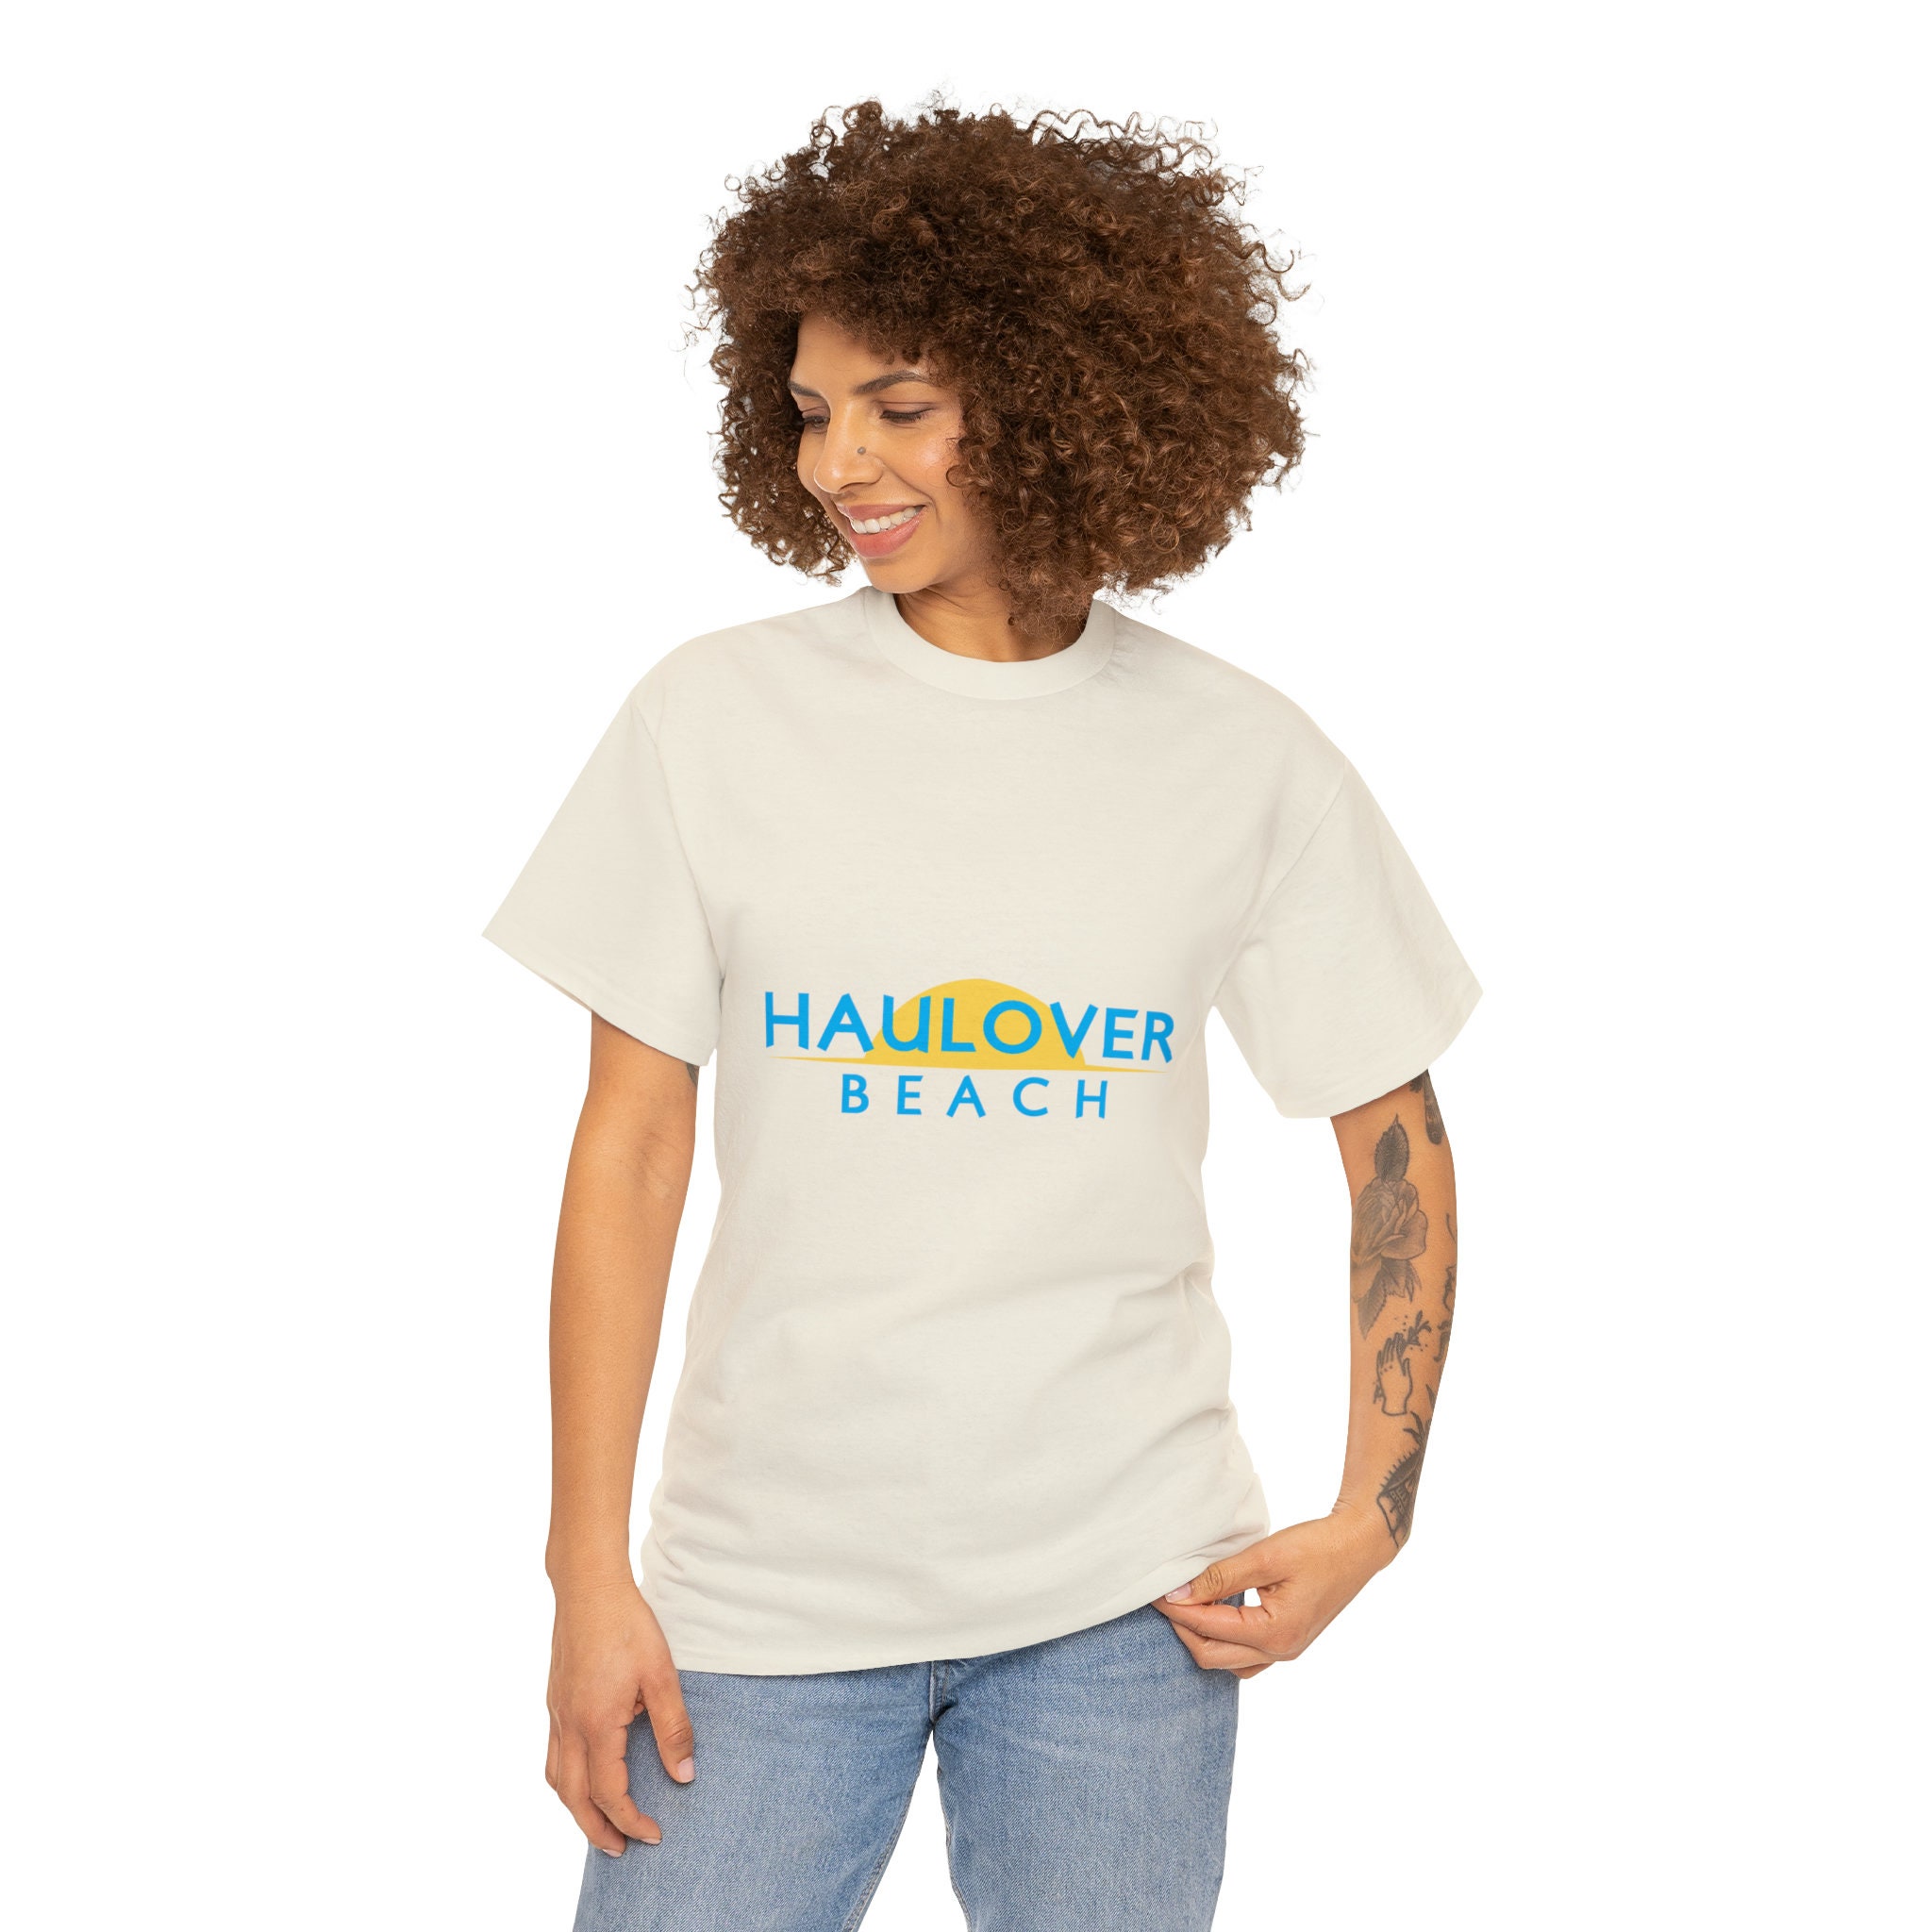 Haulover Beach Shirt photo image